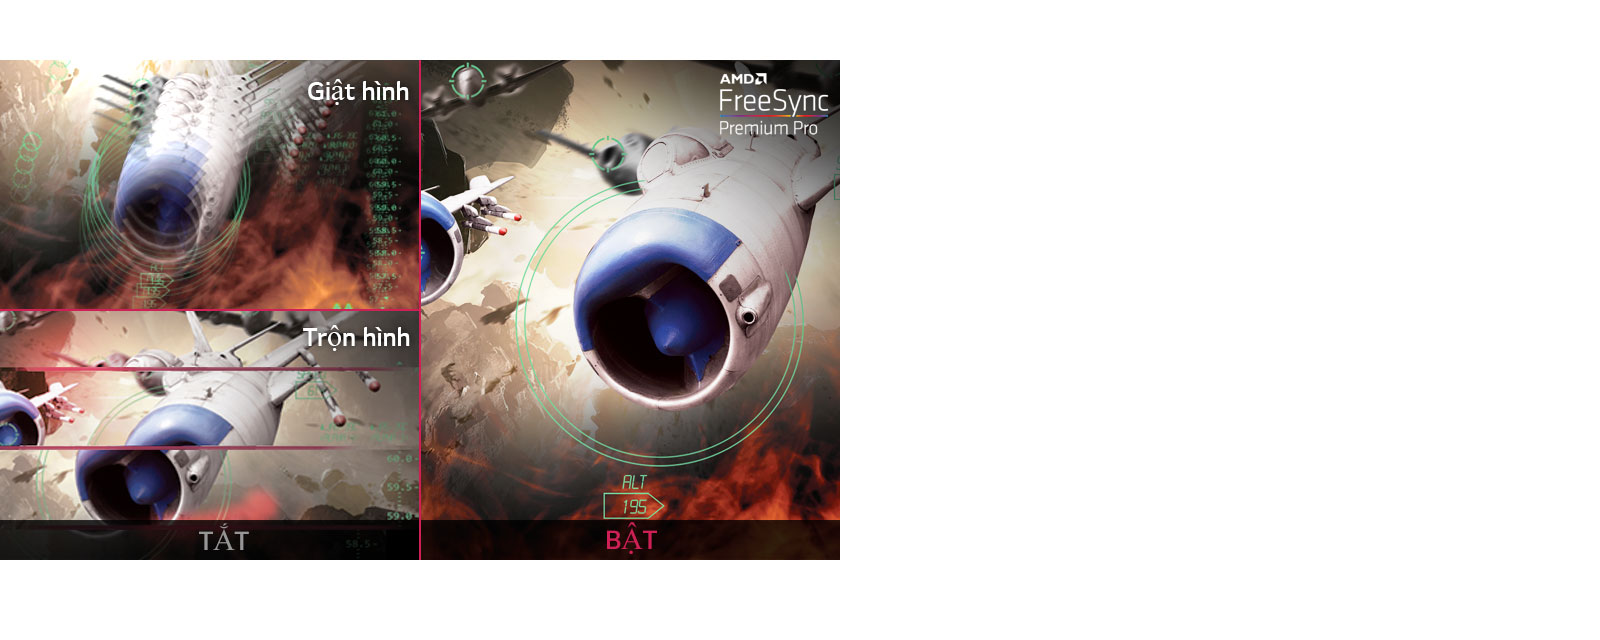 Hình ảnh chơi game rõ ràng với chuyển động mượt mà, trôi chảy khi bật AMD FreeSync™ Premium Pro, trong khi màn hình bị giật hình và xé hình khi tắt AMD FreeSync™ Premium Pro.